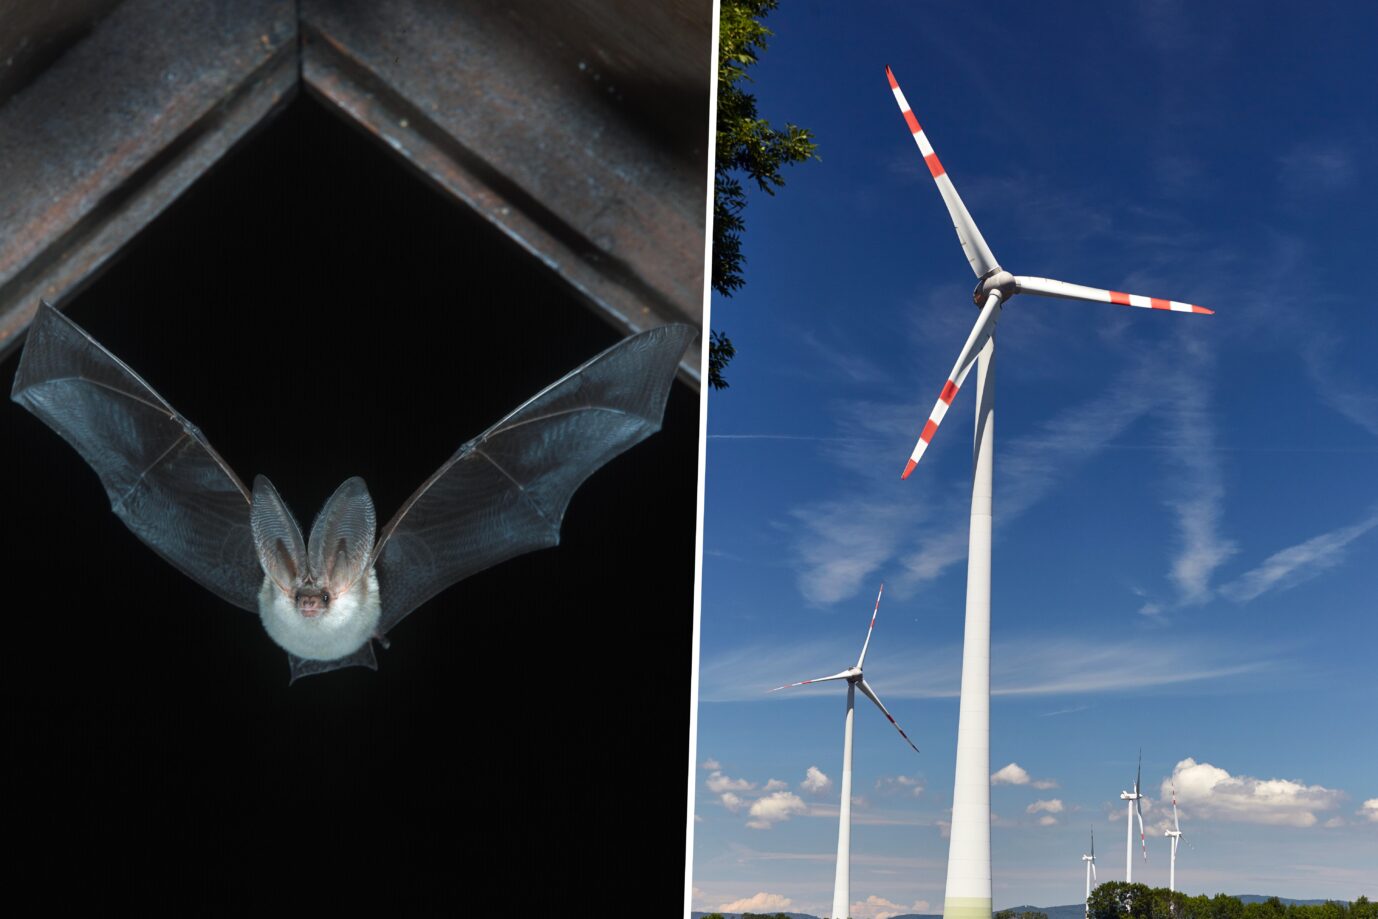 Der Artenschutz spielt in Deutschland eine immer geringere Rolle. Stattdessen werden unzählige Windräder errichtet, die zum Beispiel für Fledermäuse sehr gefährlich sind.